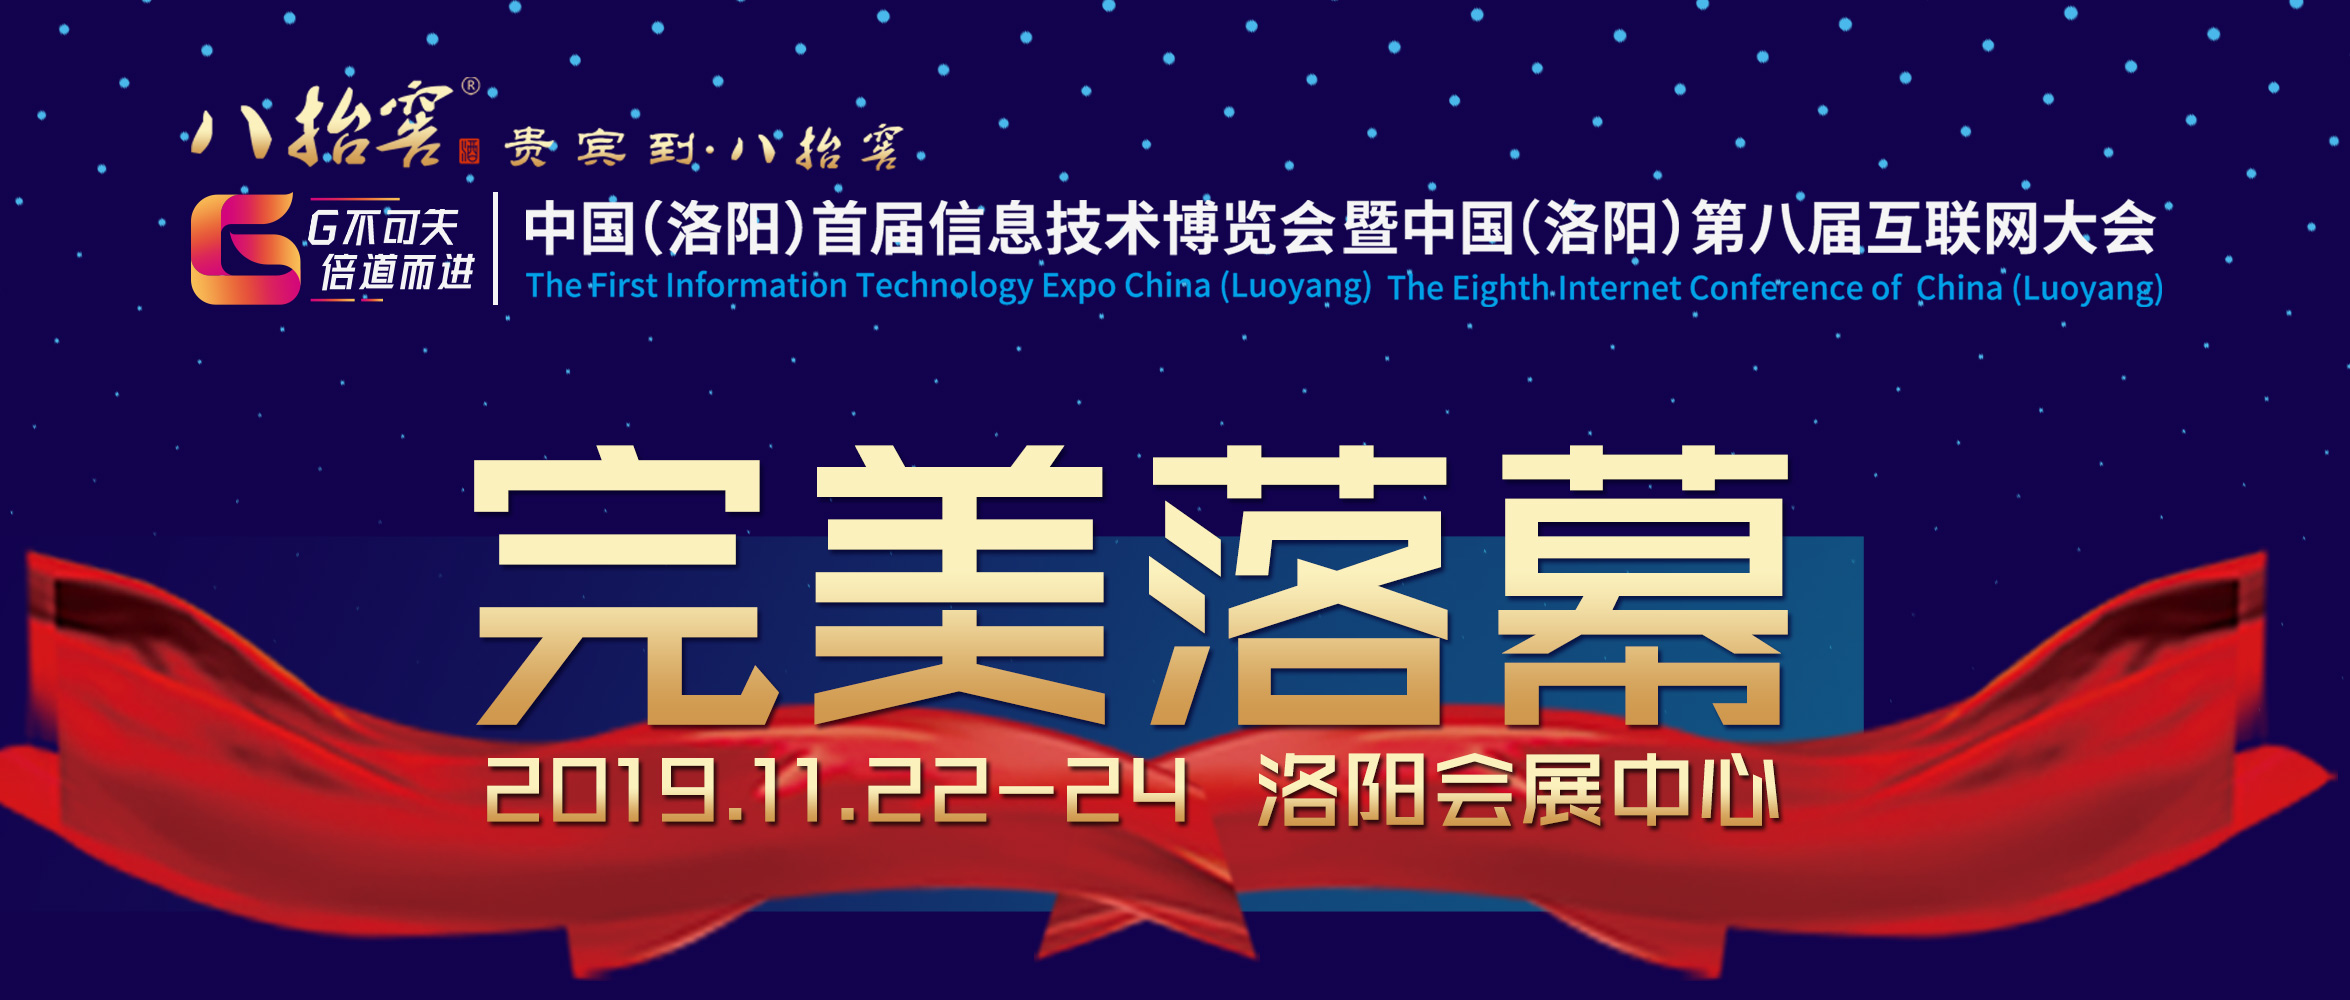 （洛阳）首届信息技术博览会暨中国（洛阳）第八届互联网大会完 美落幕